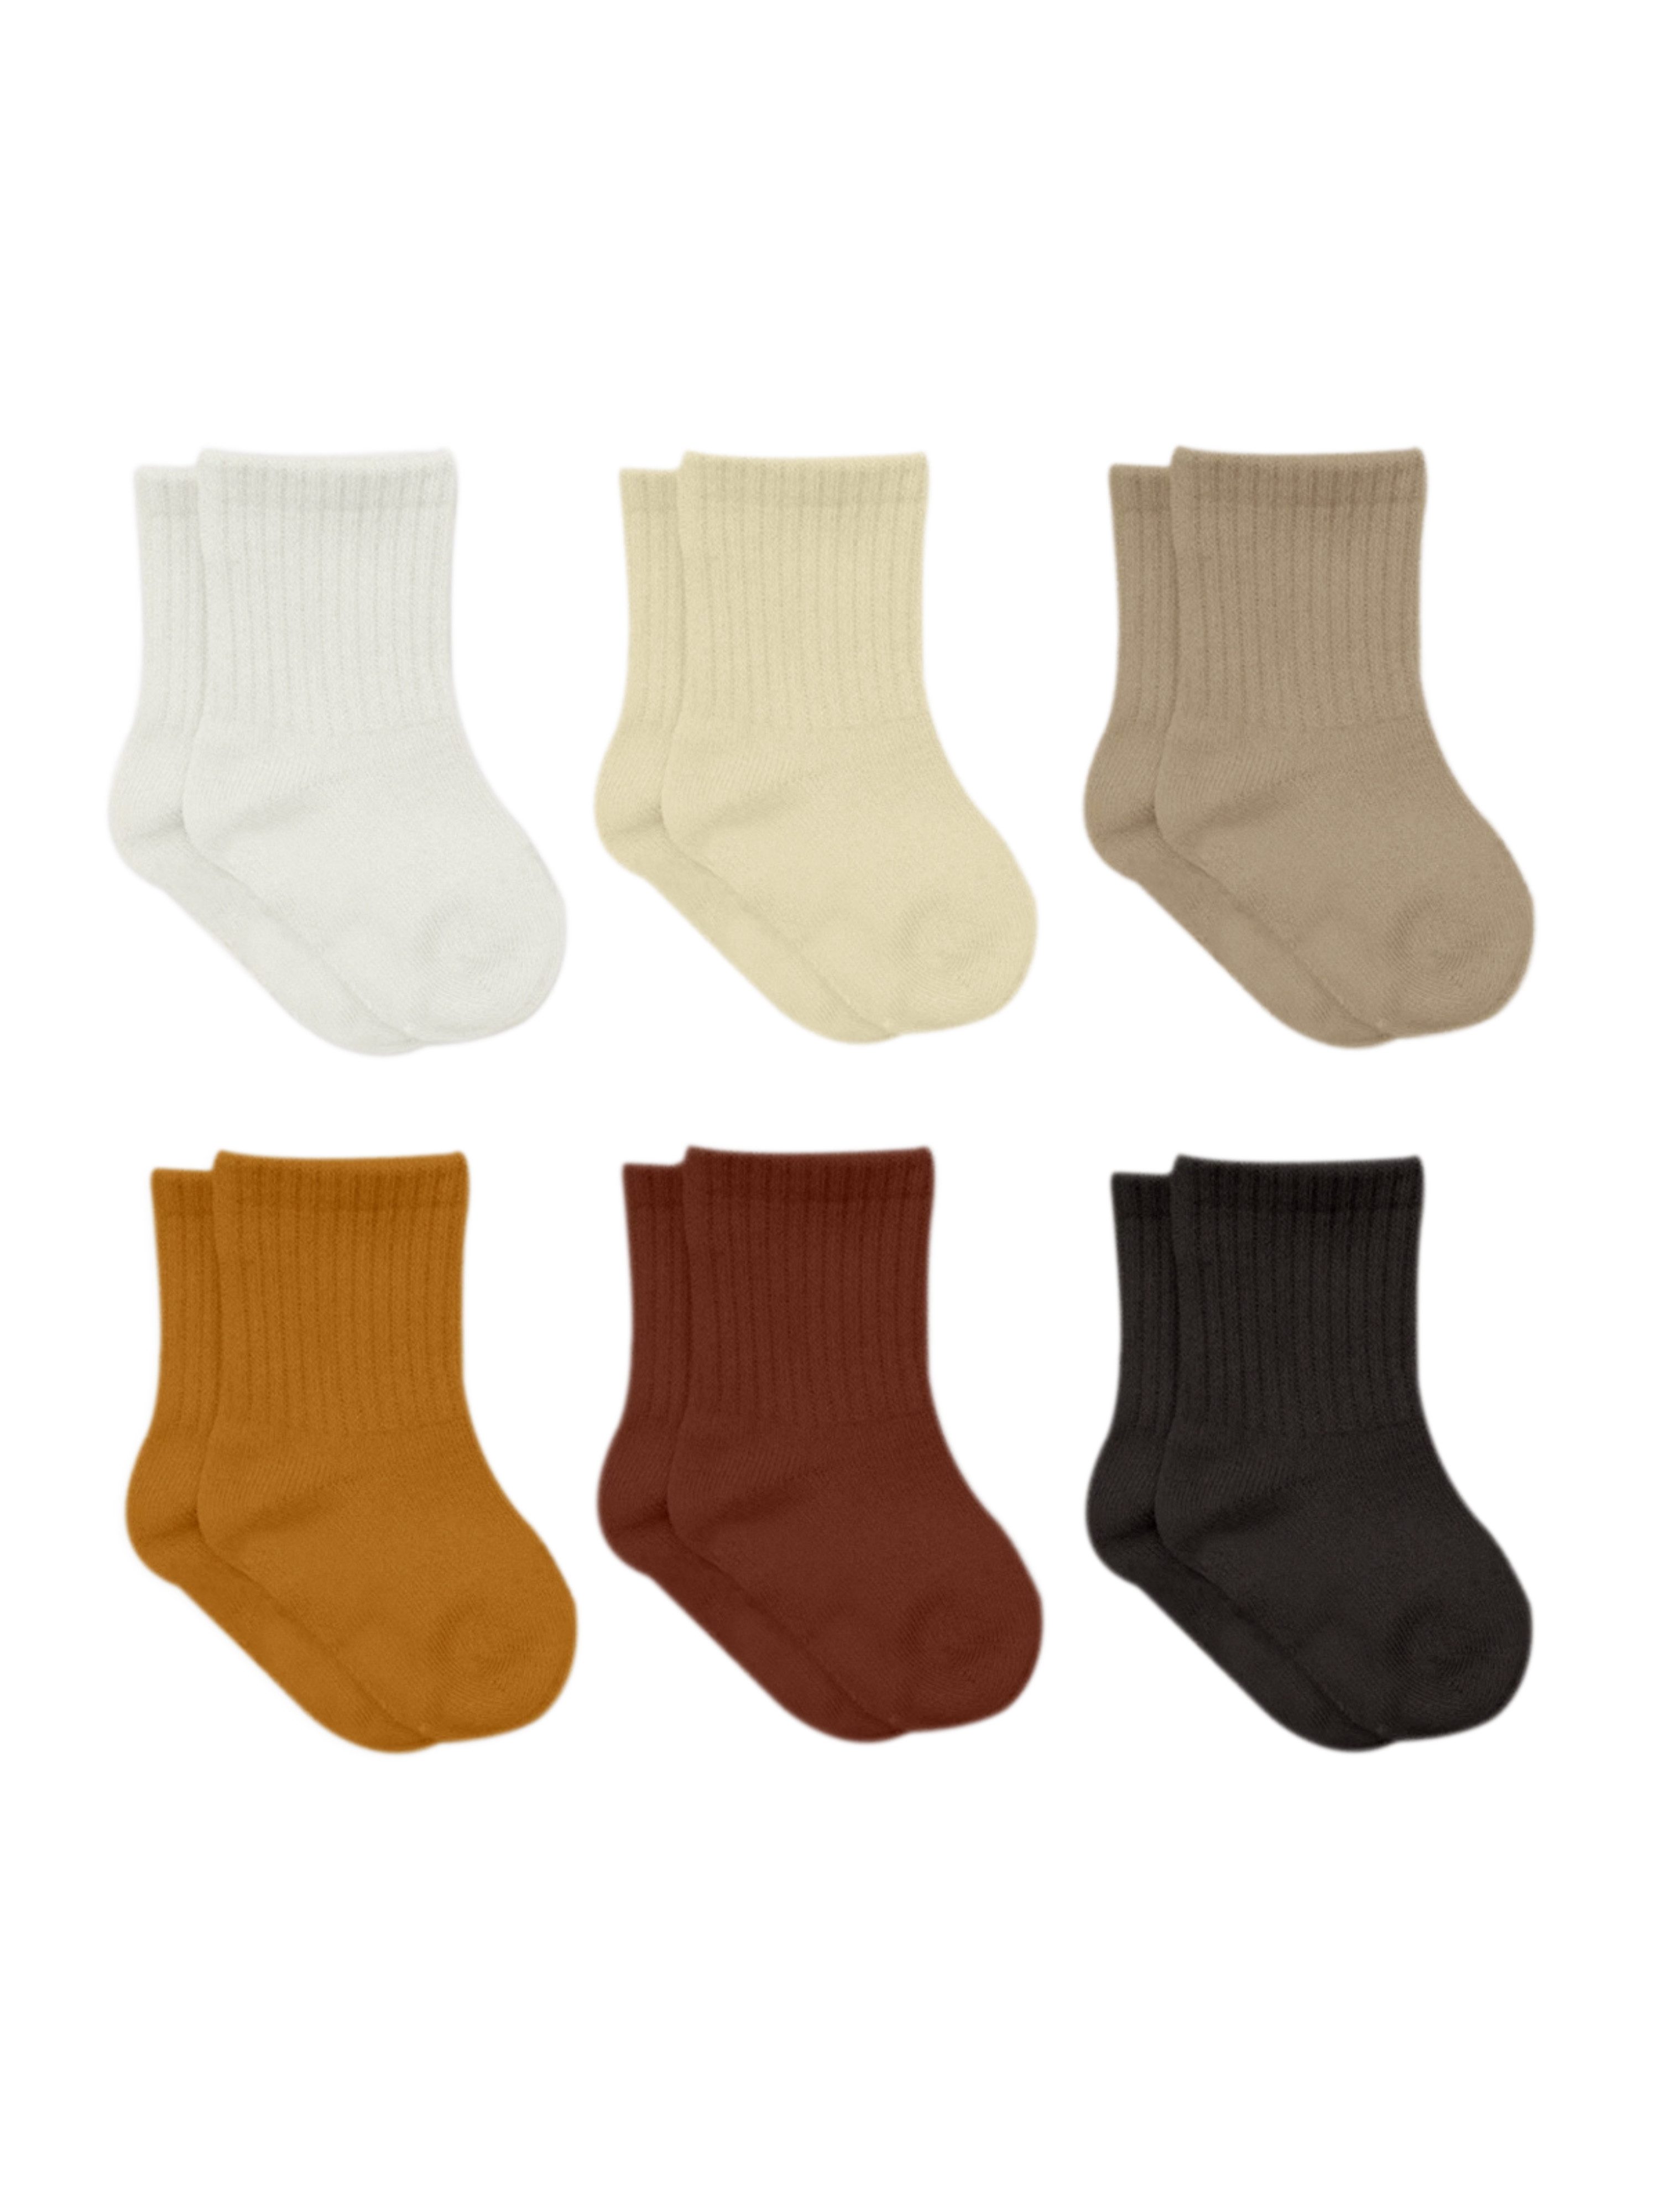 bistyle Socken für Babys Neugeborene Babysocken Jungen Mädchen Kurzsocken (Set, 6-Paar, 6er-Pack) gerippt Bio-Baumwolle GOTS zertifiziert 0-6 Monate bis 2-3 Jahre